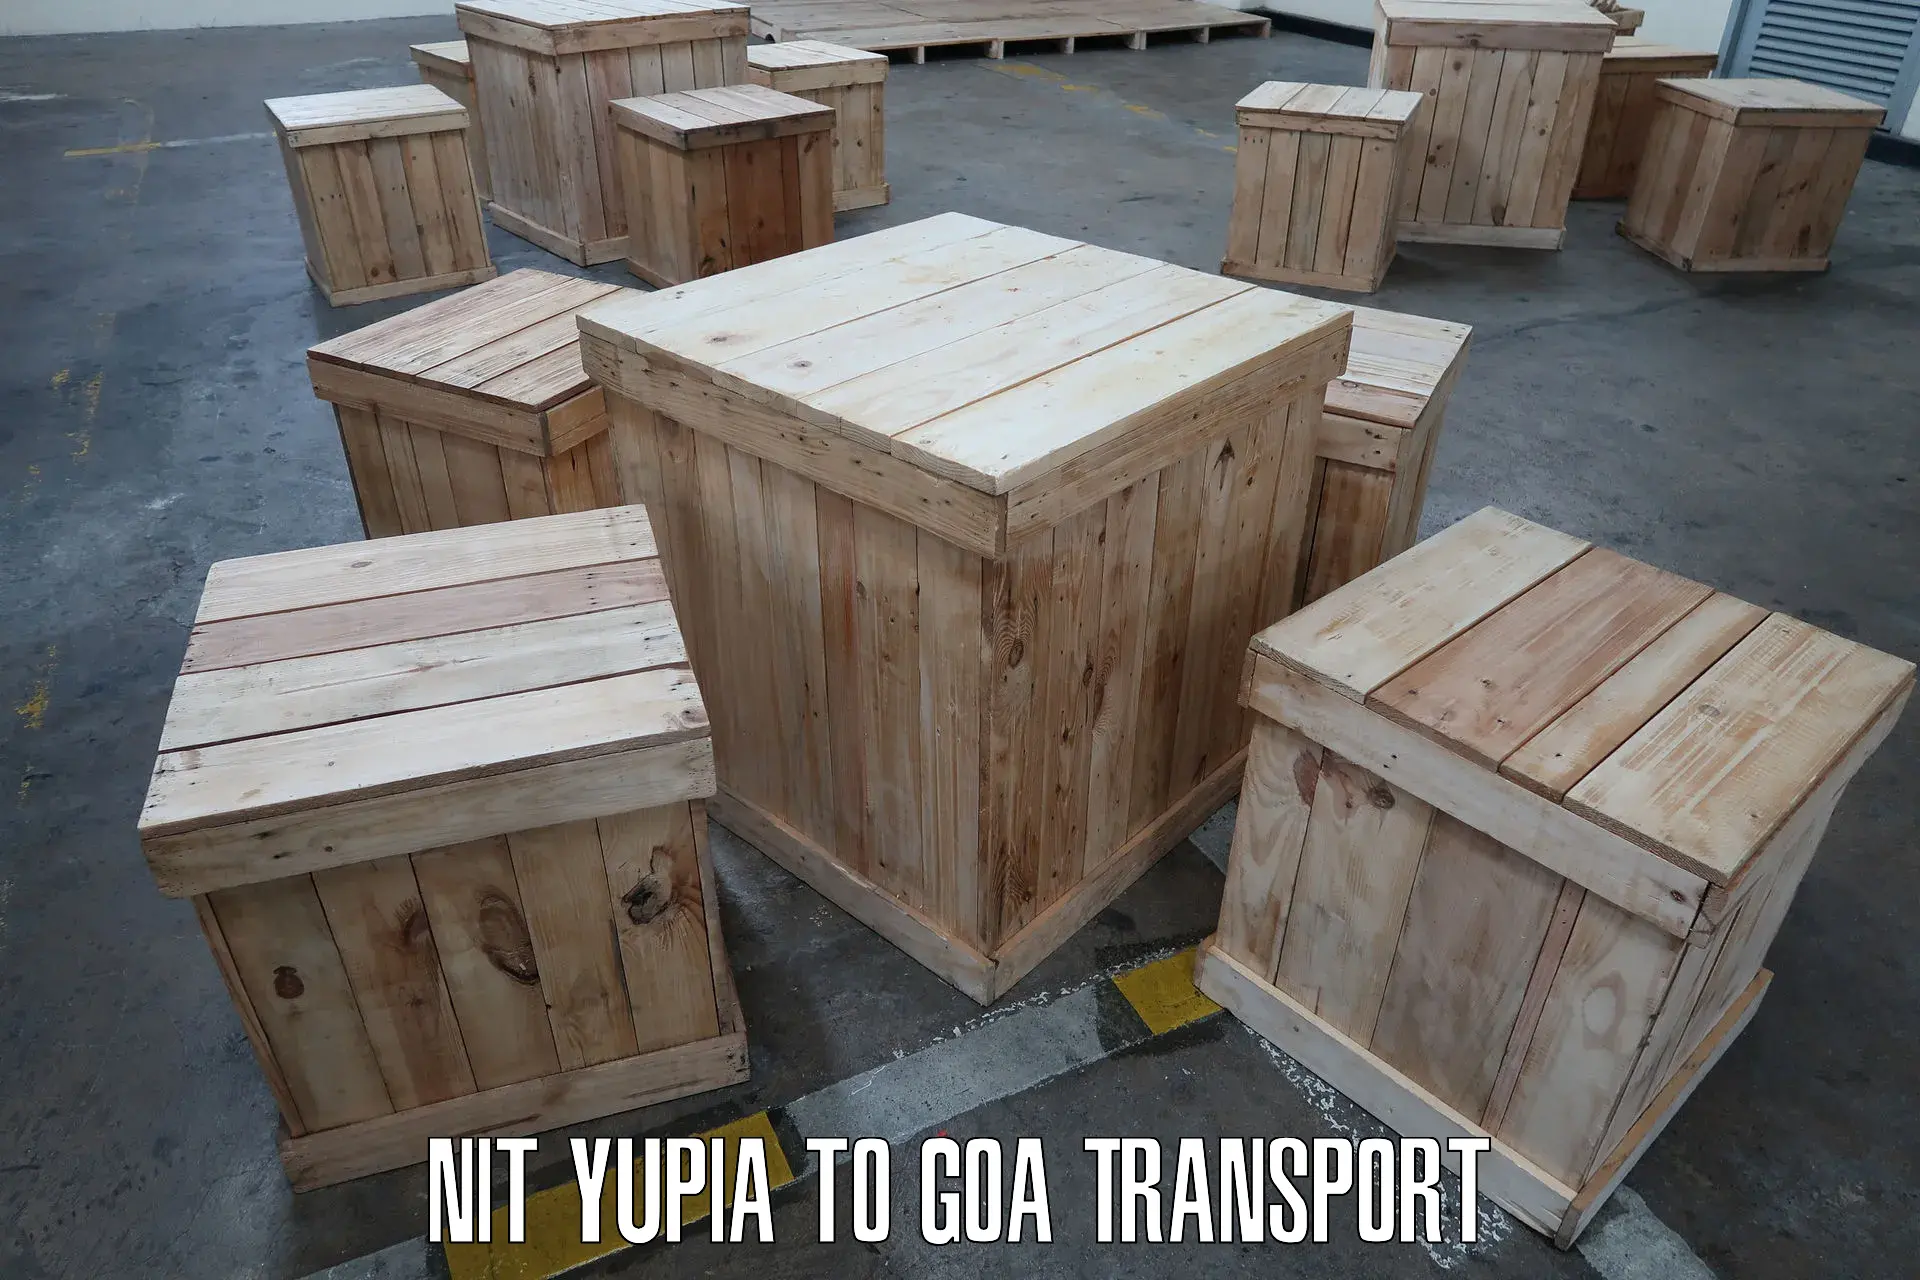 Two wheeler transport services NIT Yupia to NIT Goa